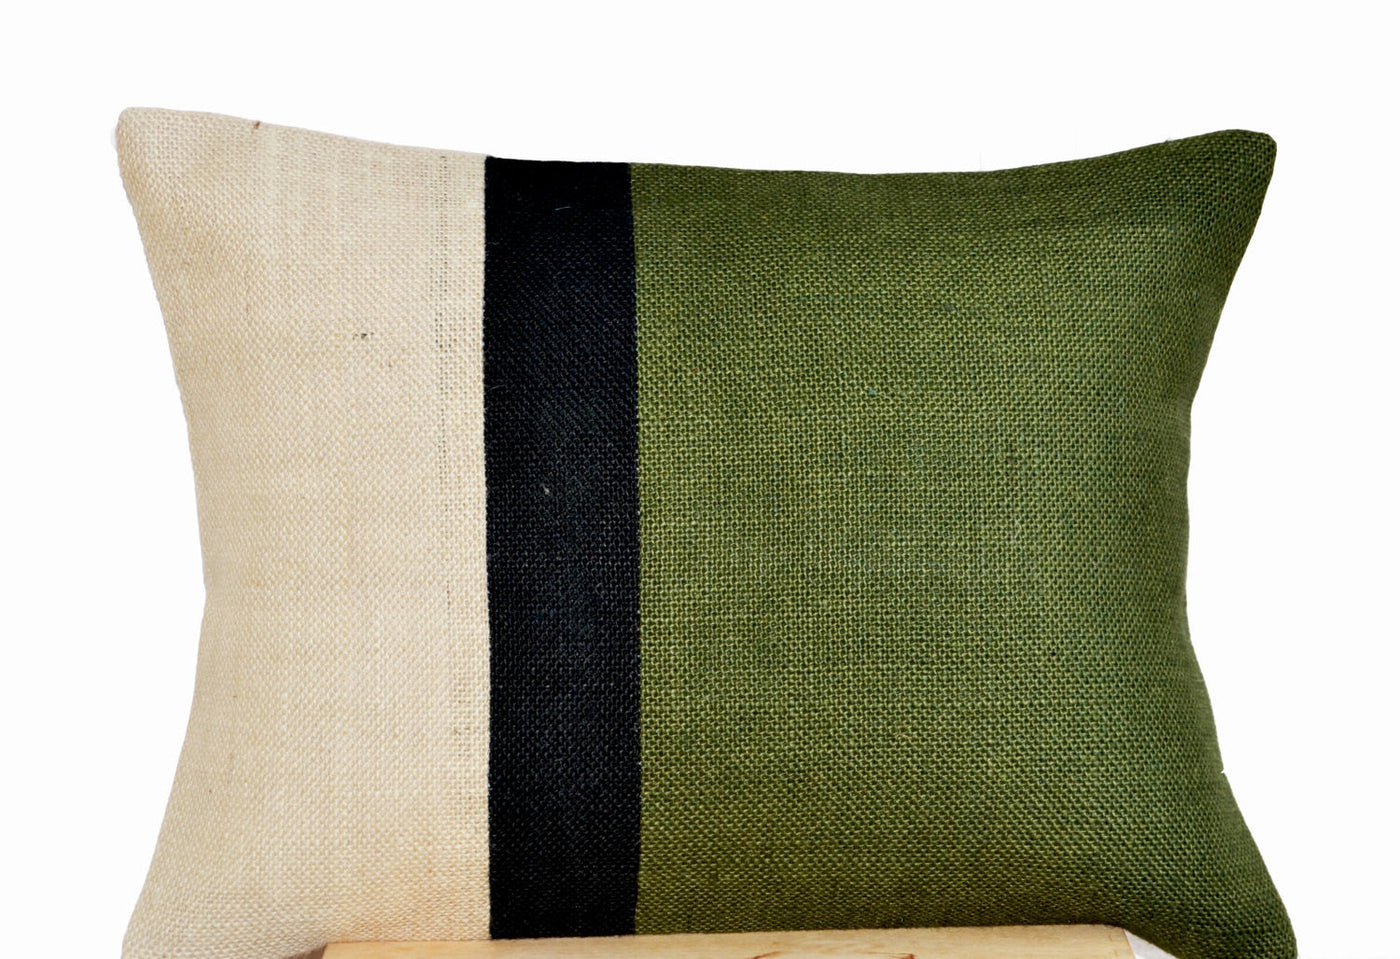 Green Lumbar Pillow - Burlap Pillow color block - Forest Green Color Block Decorative cushion cover- Throw pillow gift 12X16 - Lumbar Pillow by Amore Beauté